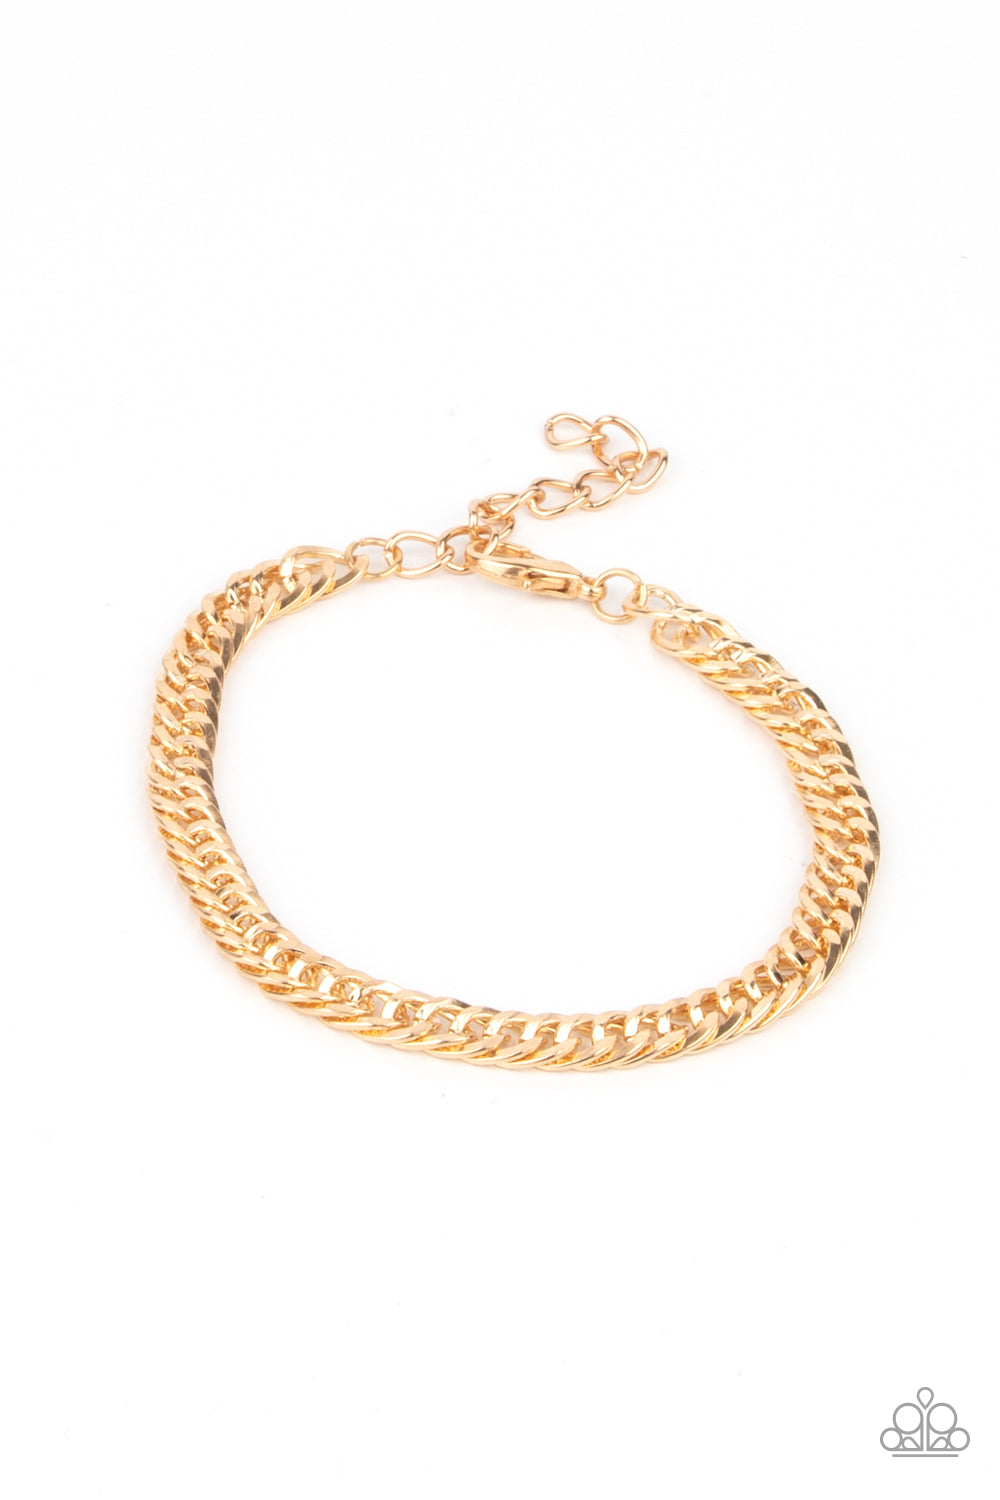 Valiant Victor Necklace & Very Valiant Bracelet - Gold Combo Set - Princess Glam Shop